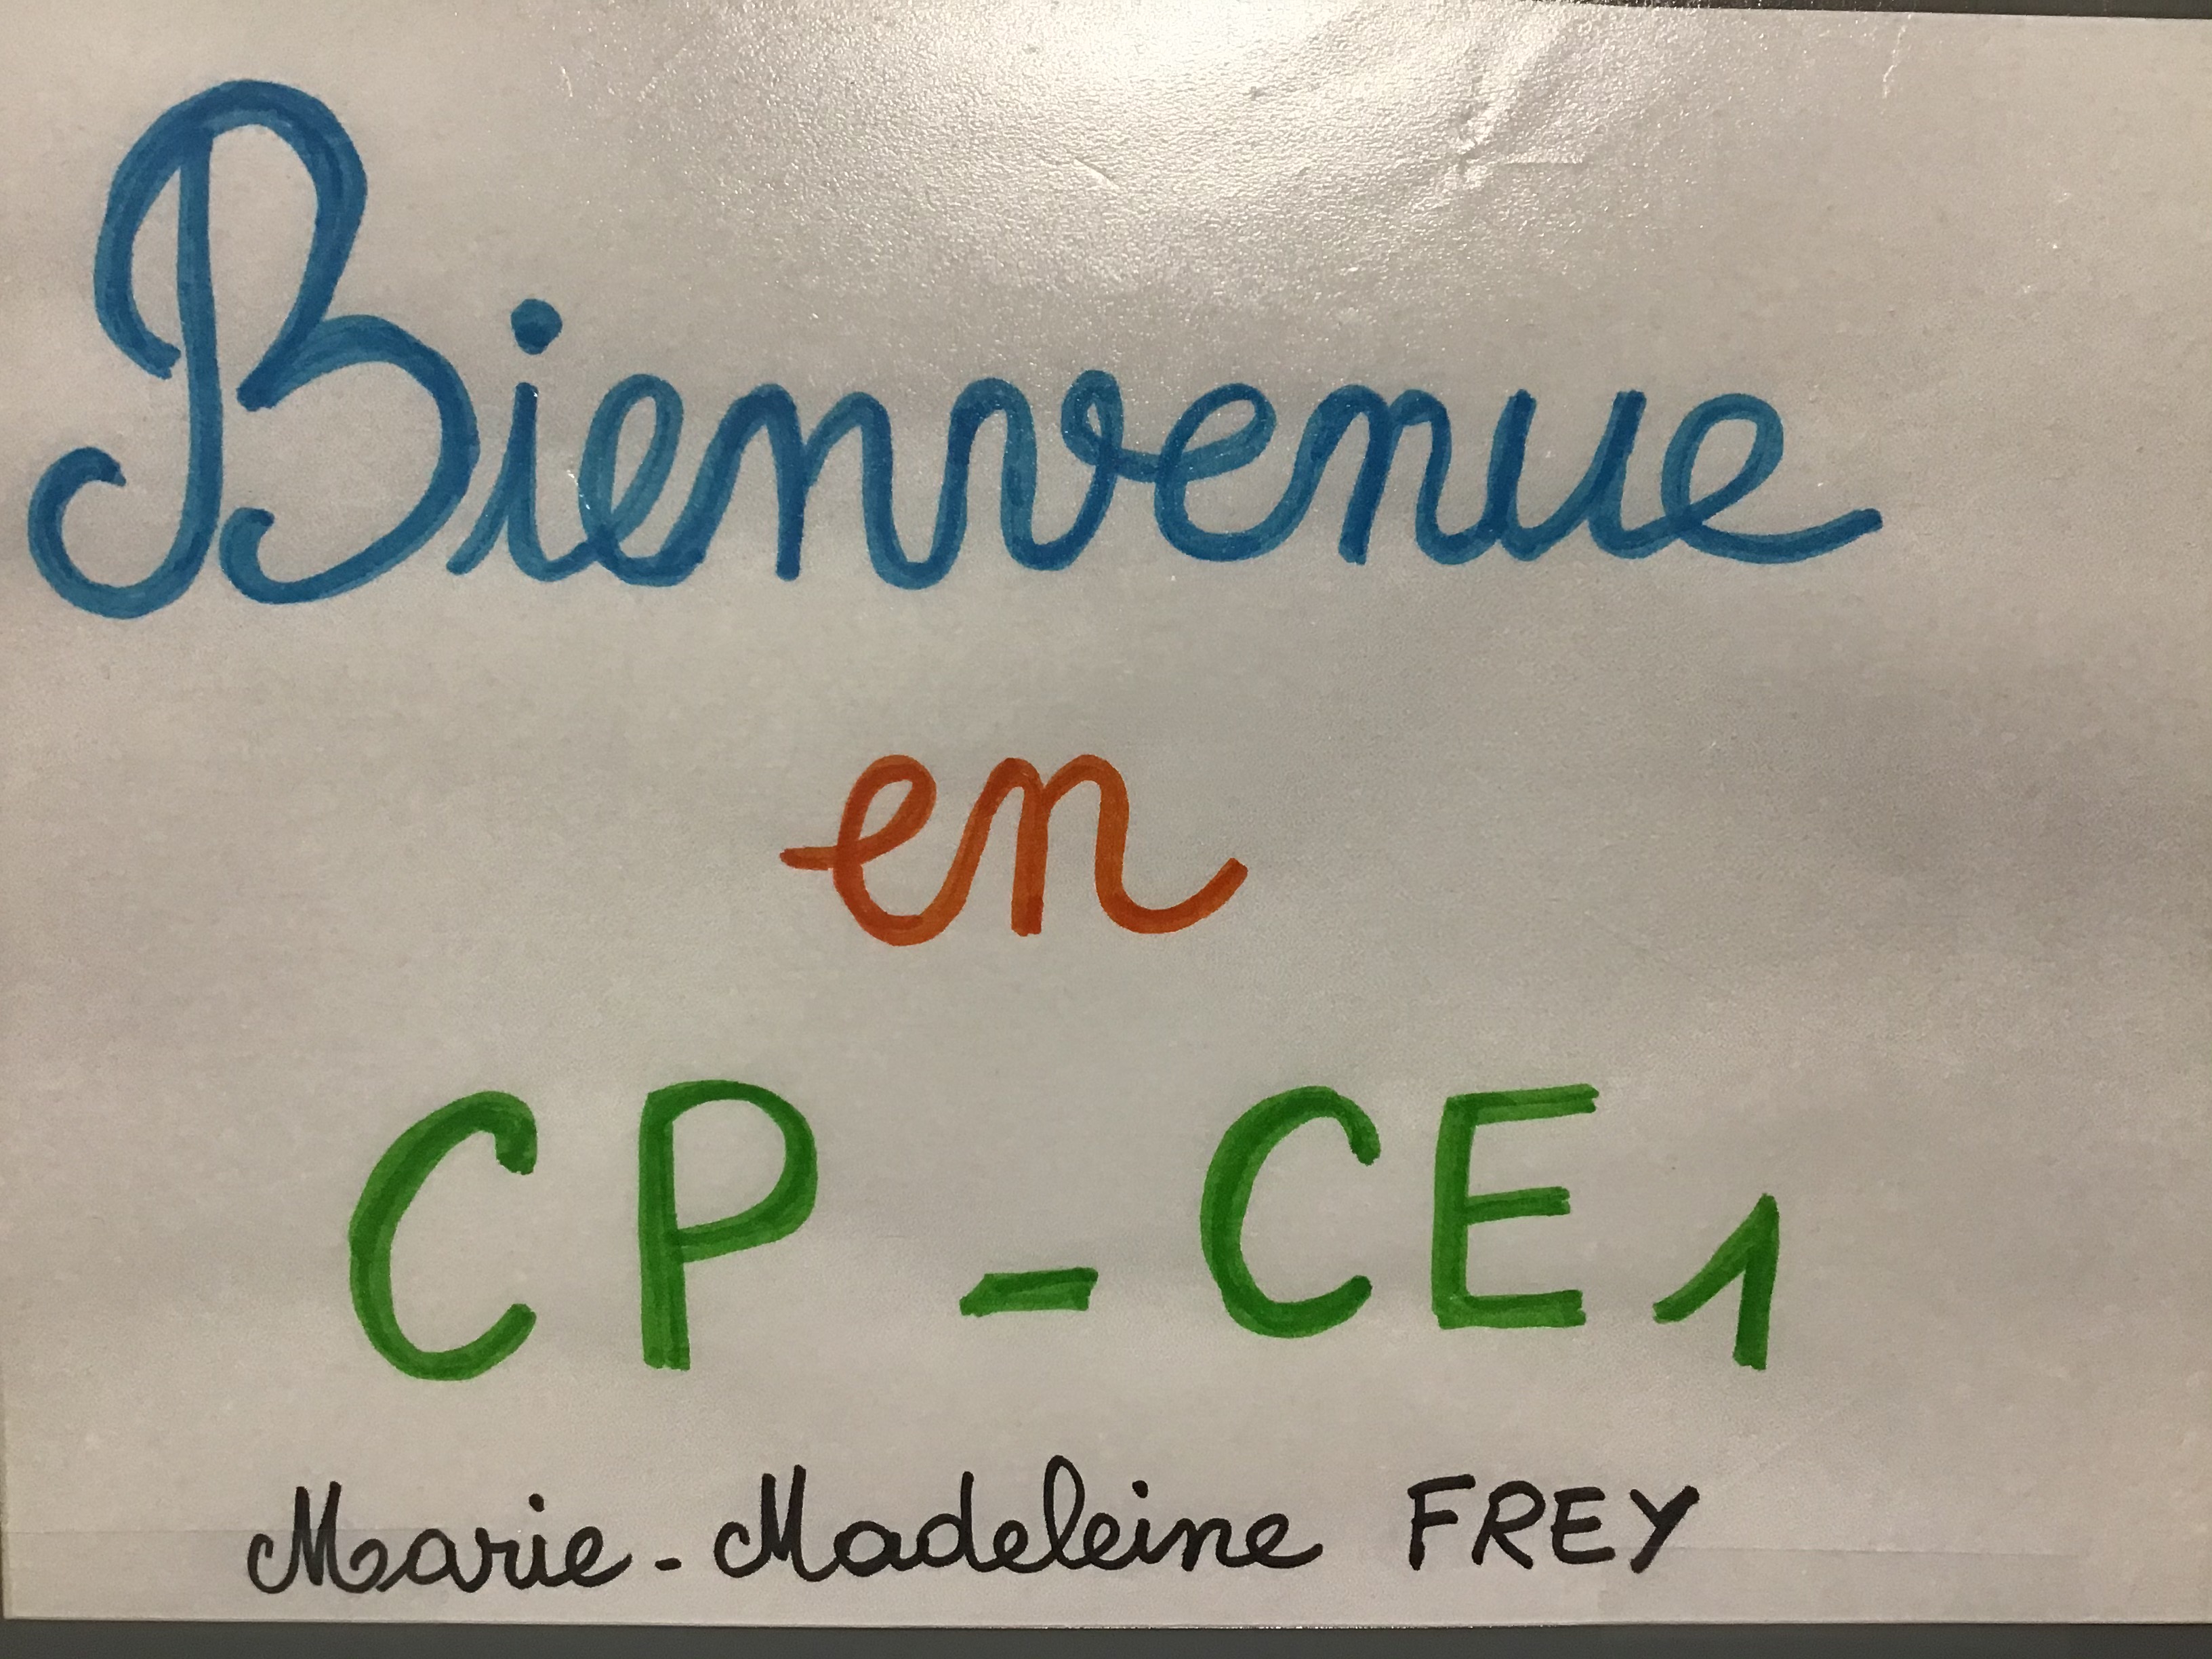 CP CE1 3